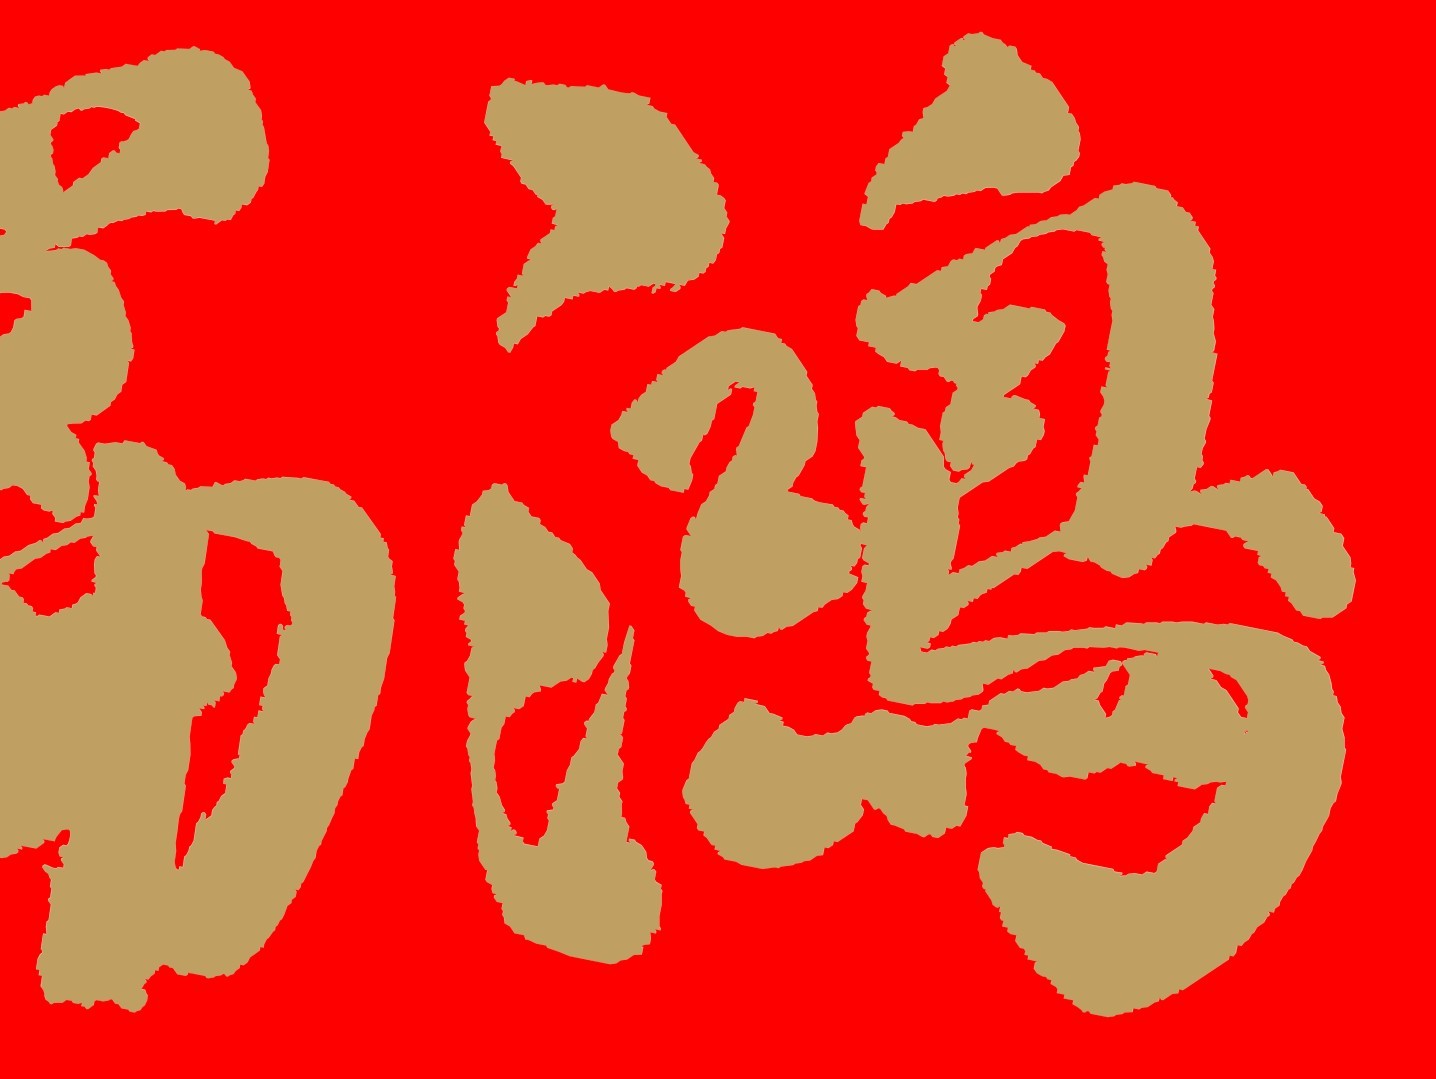 蔡徐坤创意手写名字签名字体艺术字平面设计素材下载可商用